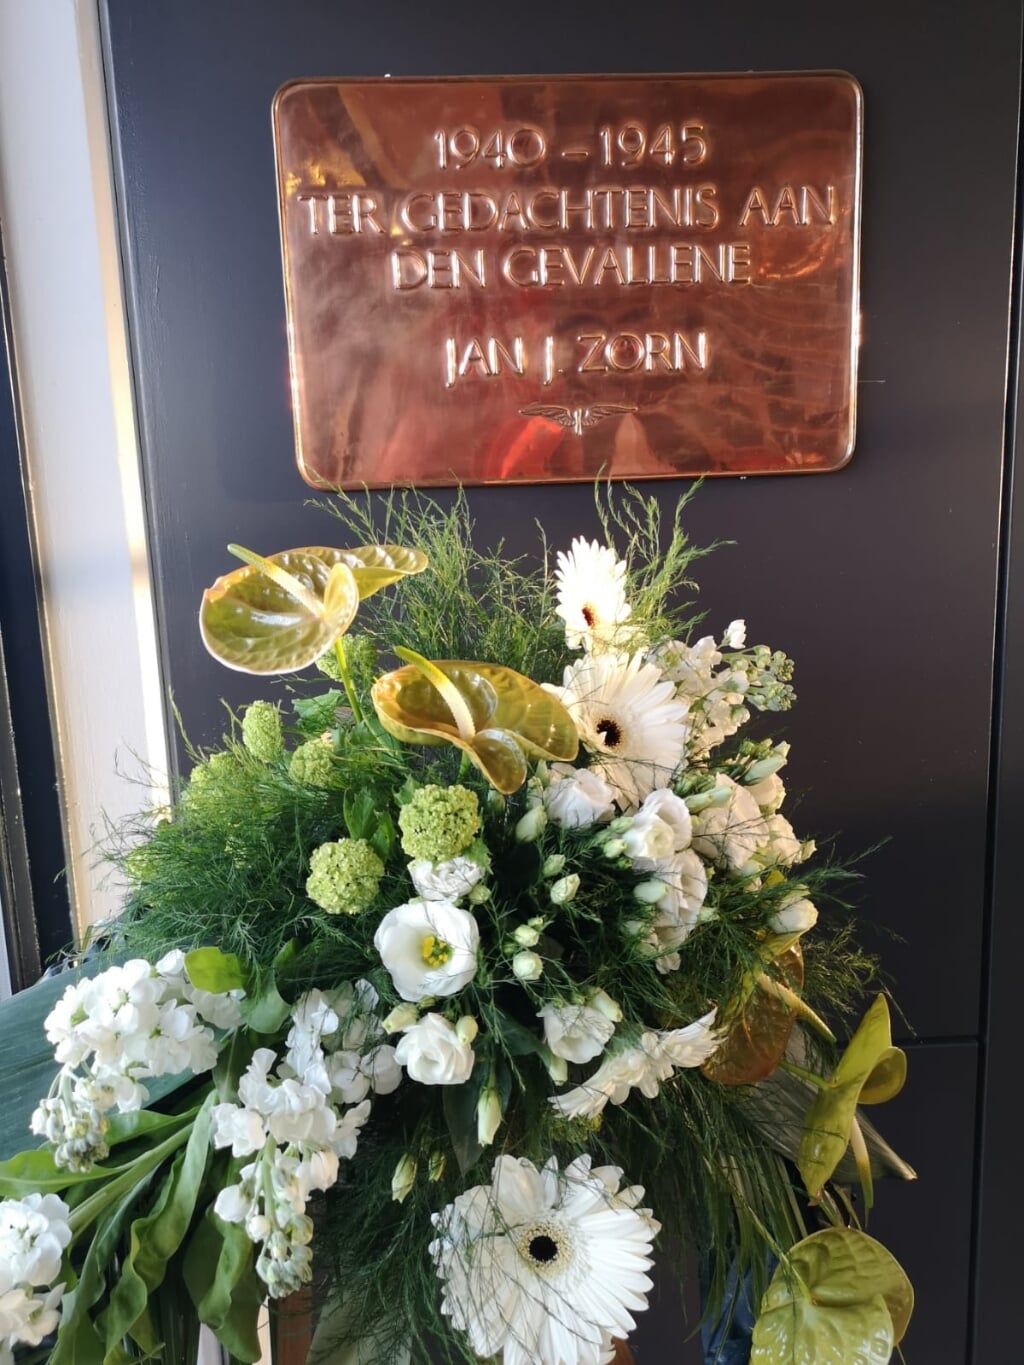 De plaquette van Jan J. Zorn blijft uiteraard behouden.